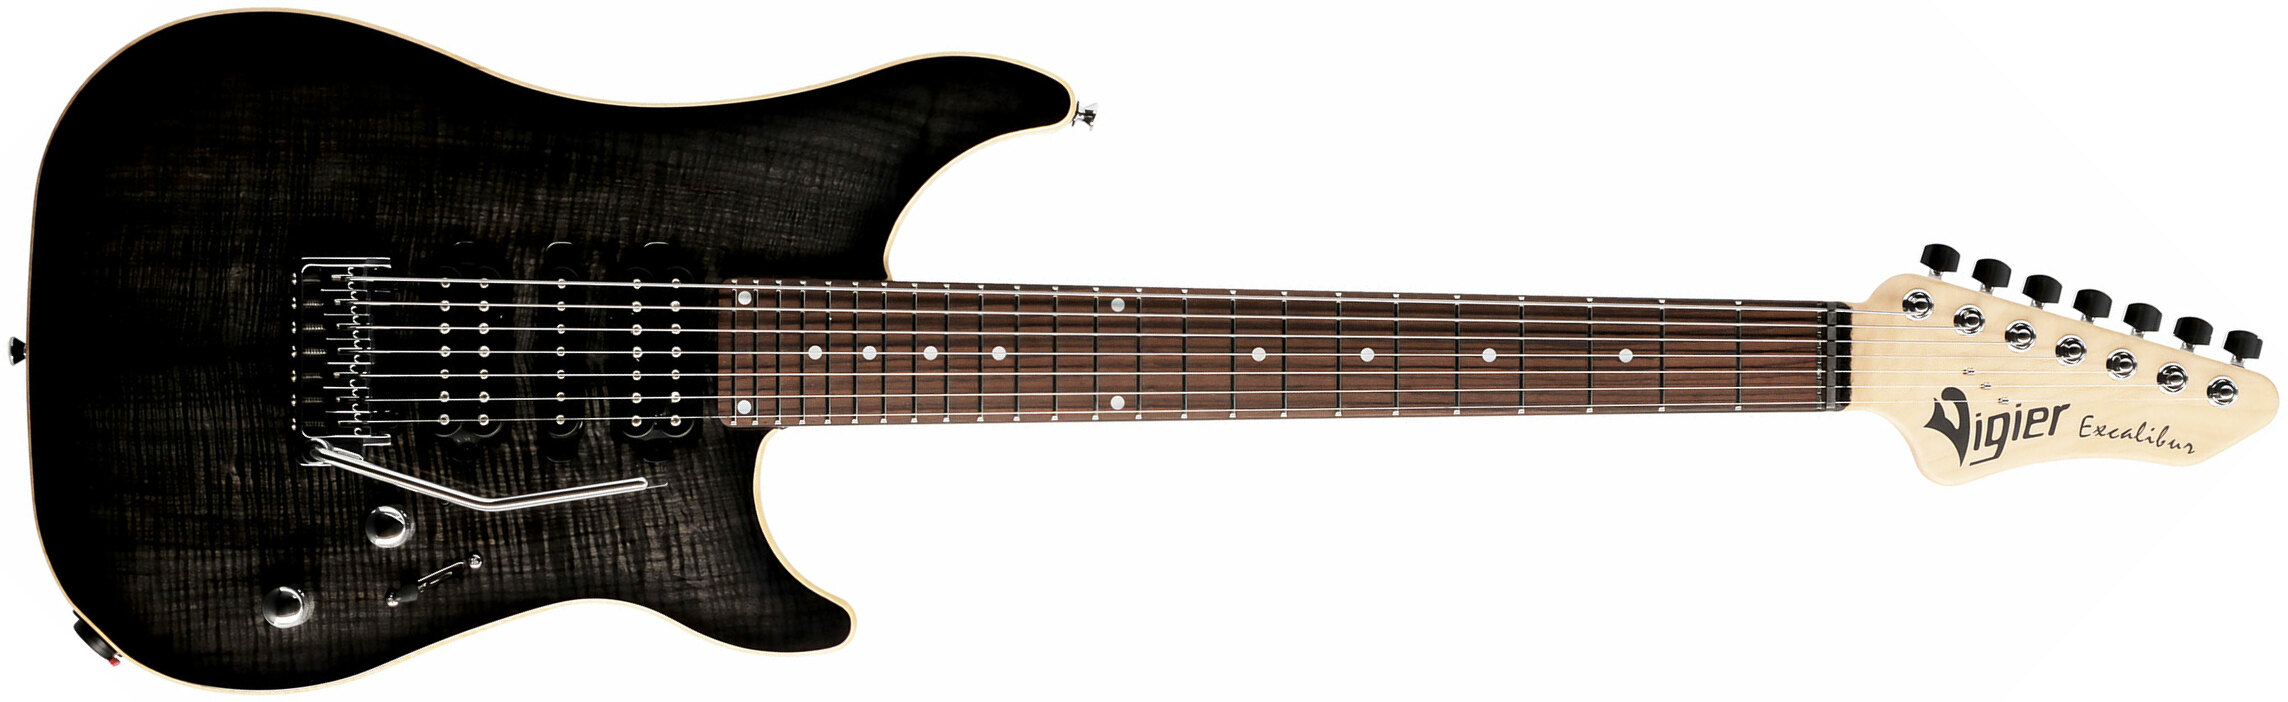 Vigier Excalibur Special 7 Hsh Trem Rw - Mysterious Black - 7-saitige E-Gitarre - Main picture